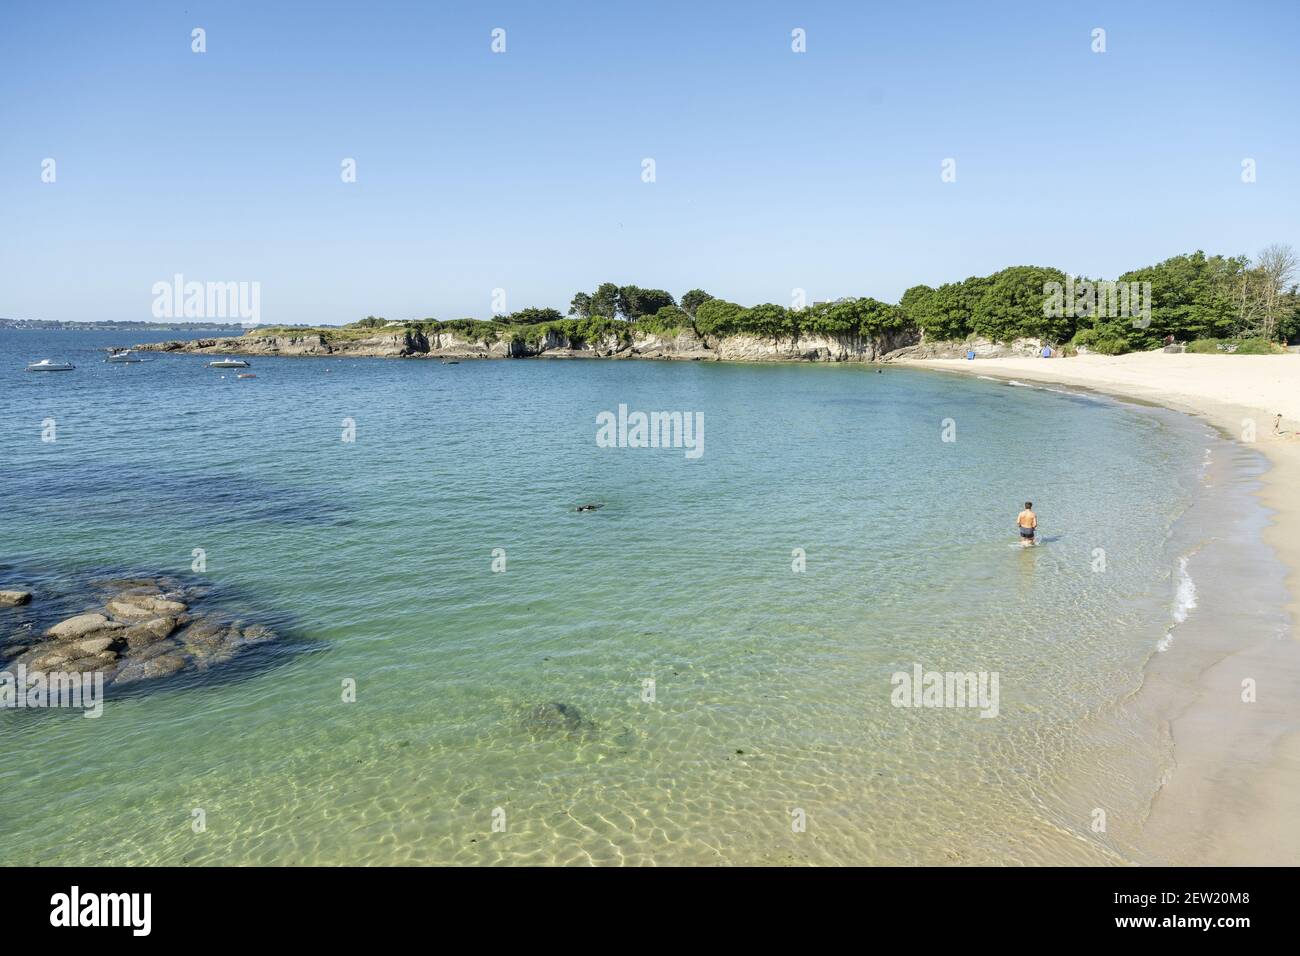 France, Morbihan, Ploemeur, Perello beach Stock Photo